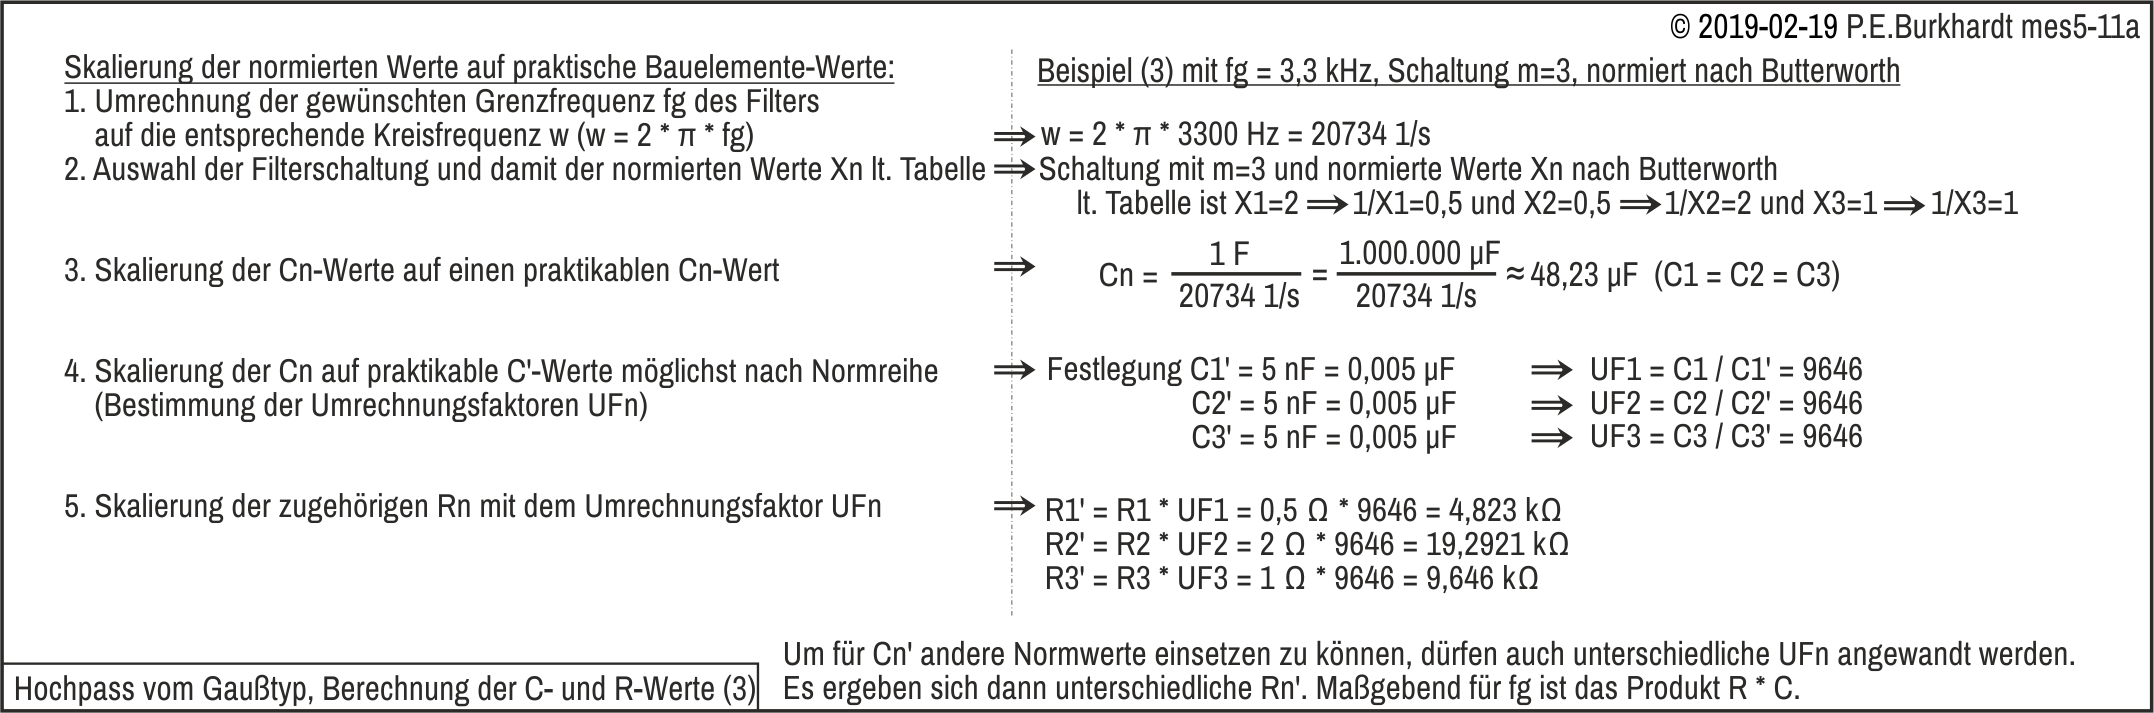 Butterworth-Filter, Bessel-Filter (Hochpass, Berechnung)